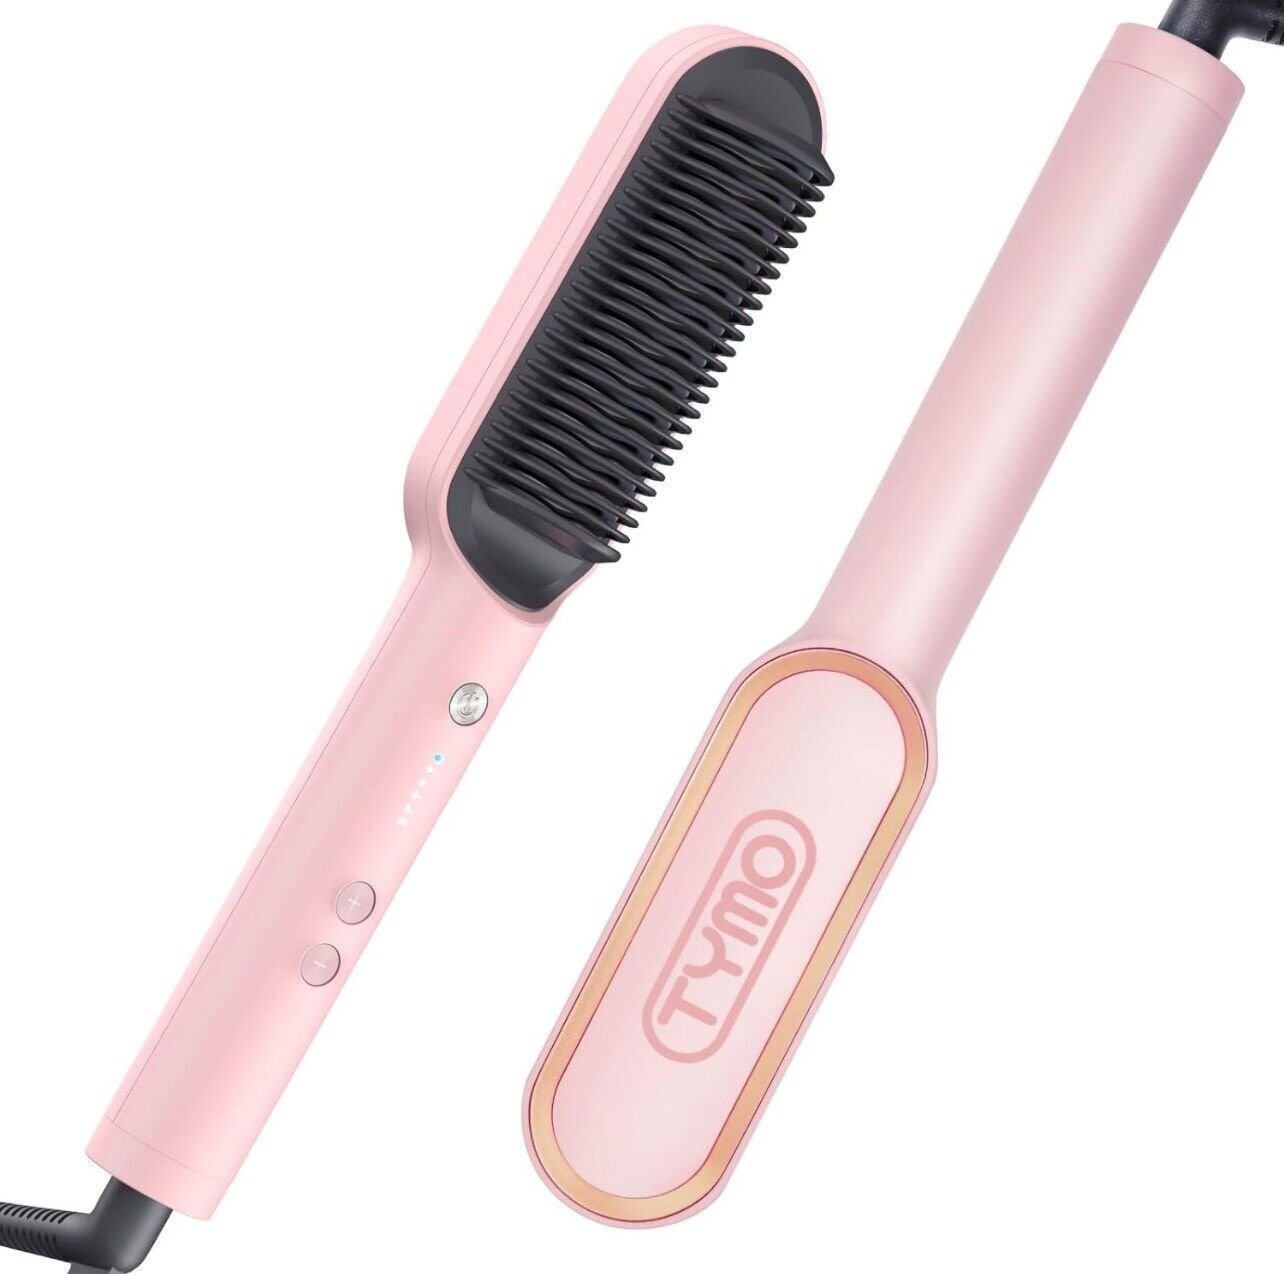 TYMO Ring Hair Straightening Brush - 6 Feet Cord - Light Pink 5FlczvOtO